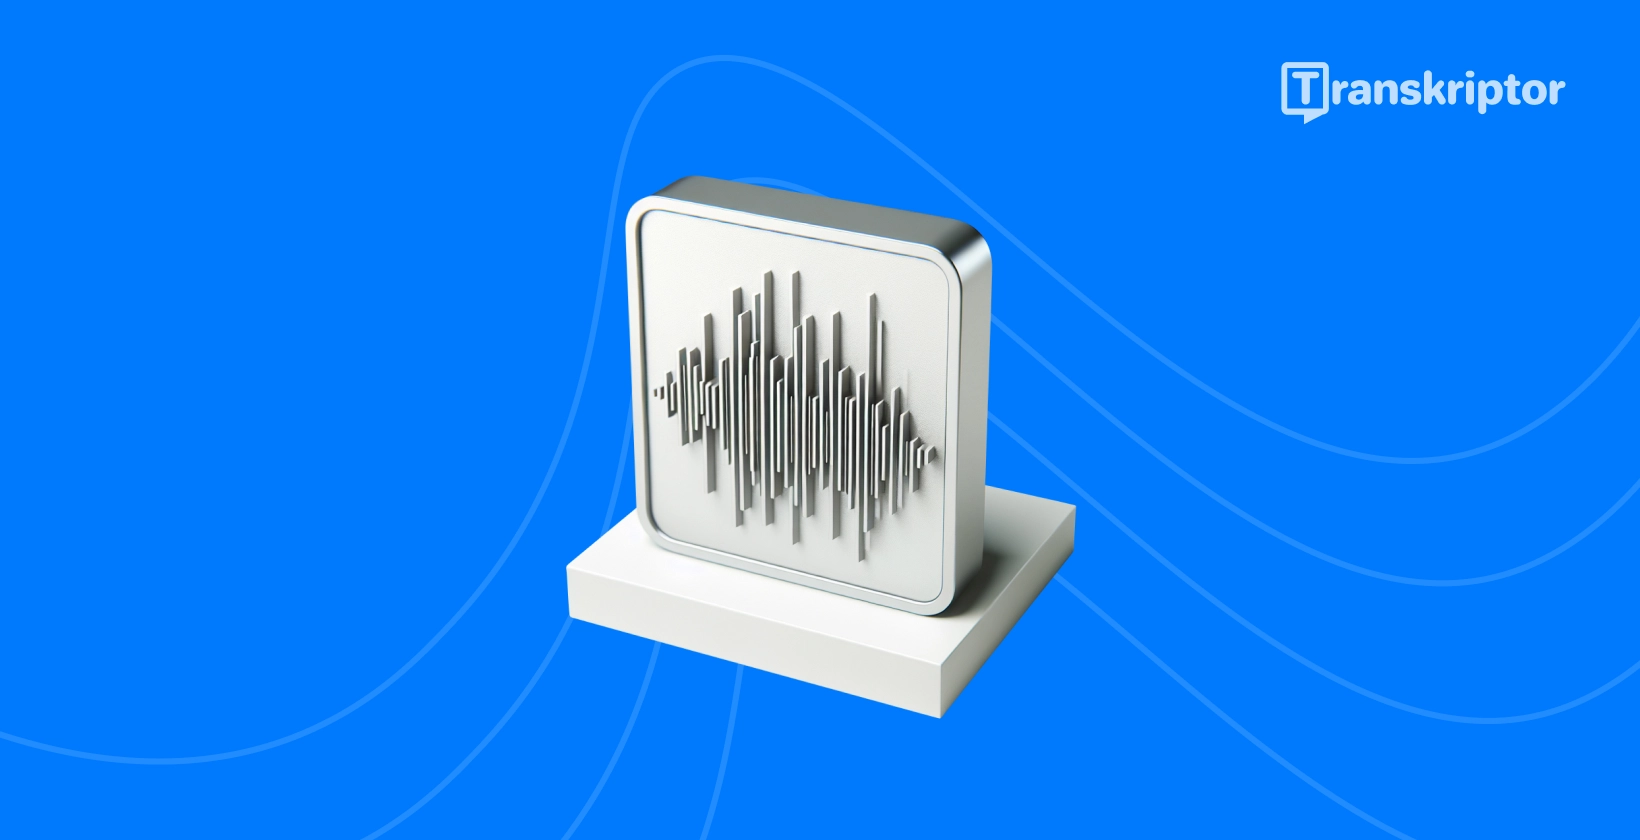 Garso bangų iliustracija monitoriuje vaizduoja tiesioginio garso transkripcijos procesą, kaip išsamiai aprašyta vadove.